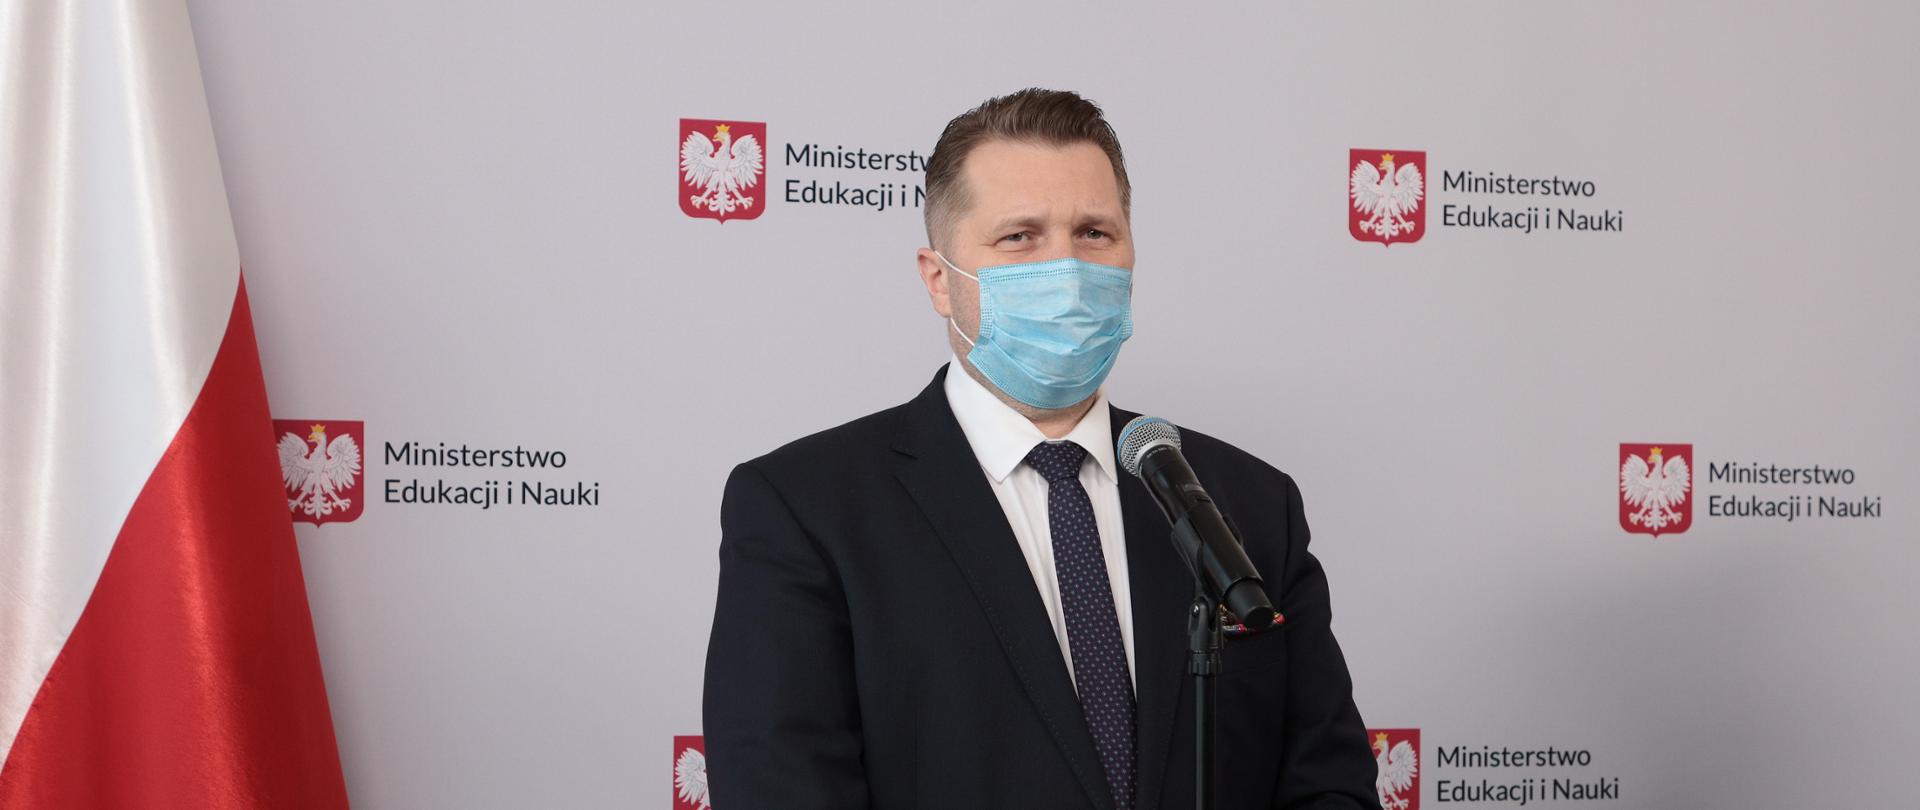 Minister Przemysław Czarnek stoi przy mikrofonie. Na twarzy ma maseczkę, jest ubrany w garnitur. W tle baner z logotypami Ministerstwa Edukacji i Nauki i biało-czerwona flaga. 